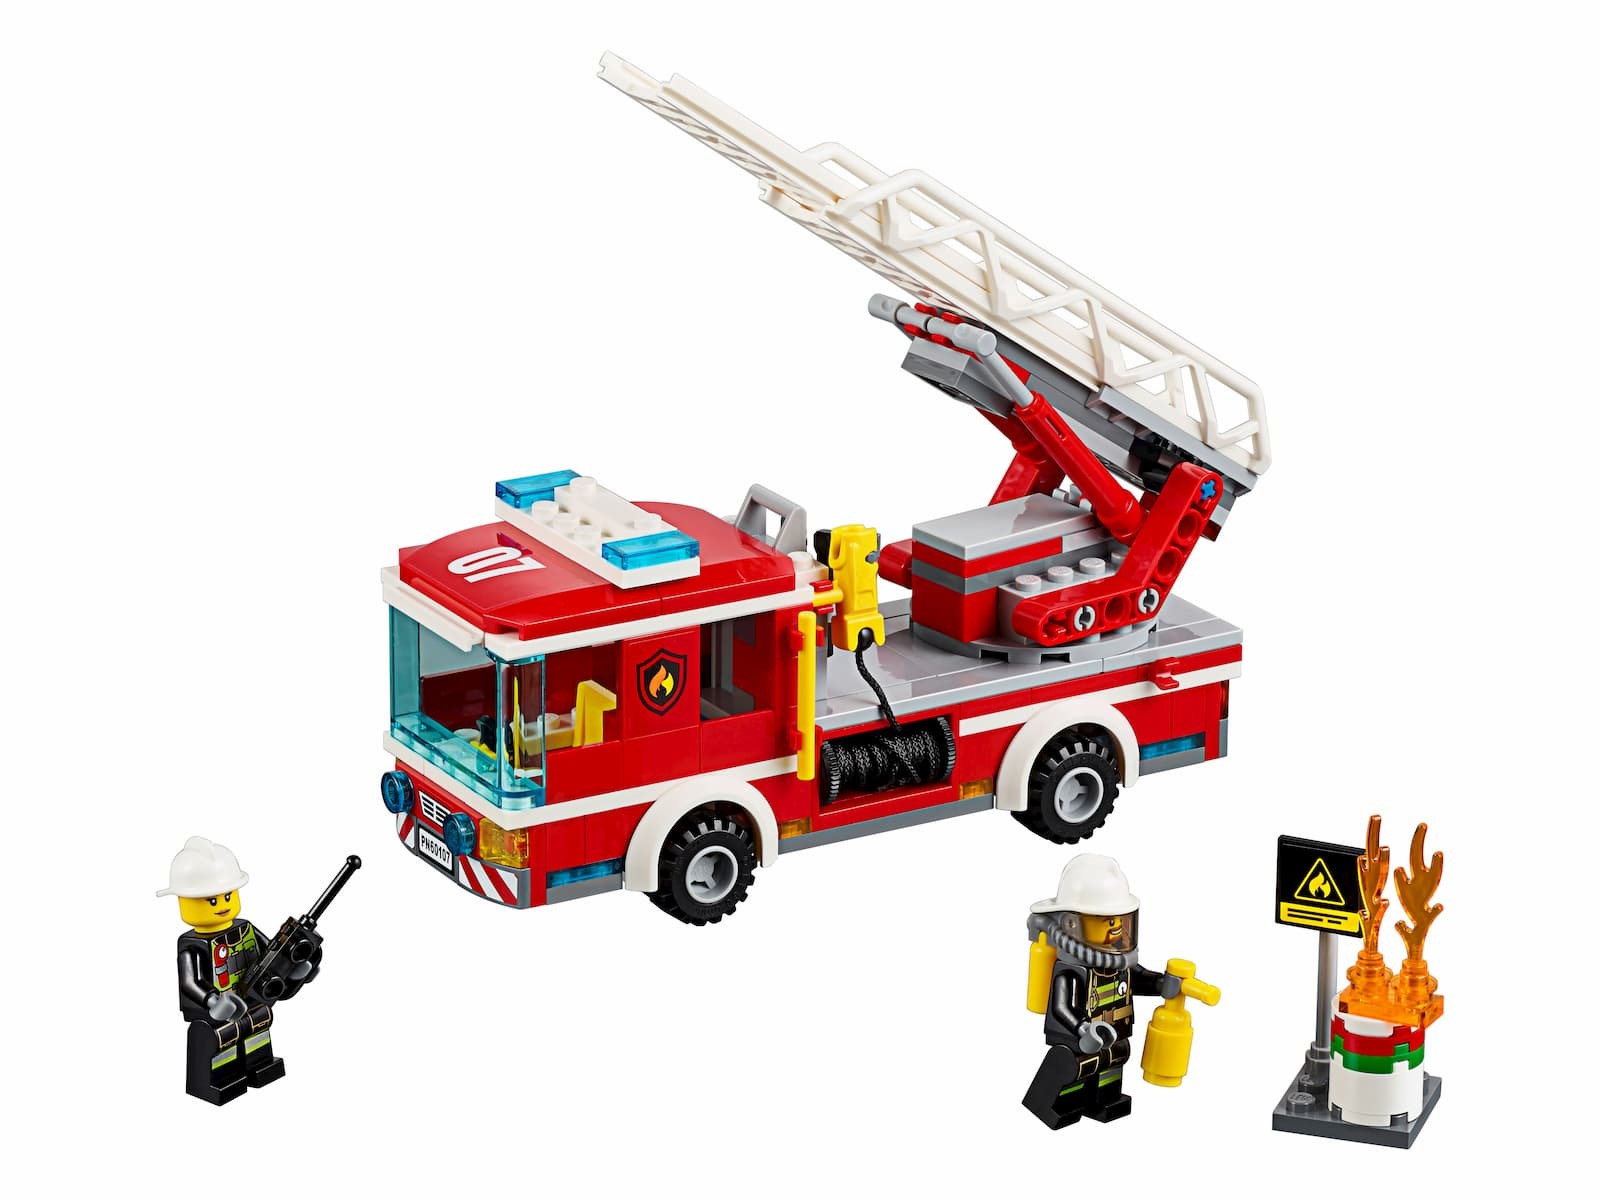 Лего Сити 60107. LEGO City 60107. Конструктор LEGO City 60107 пожарная машина с лестницей. Лего City 60107. Сити пожарная